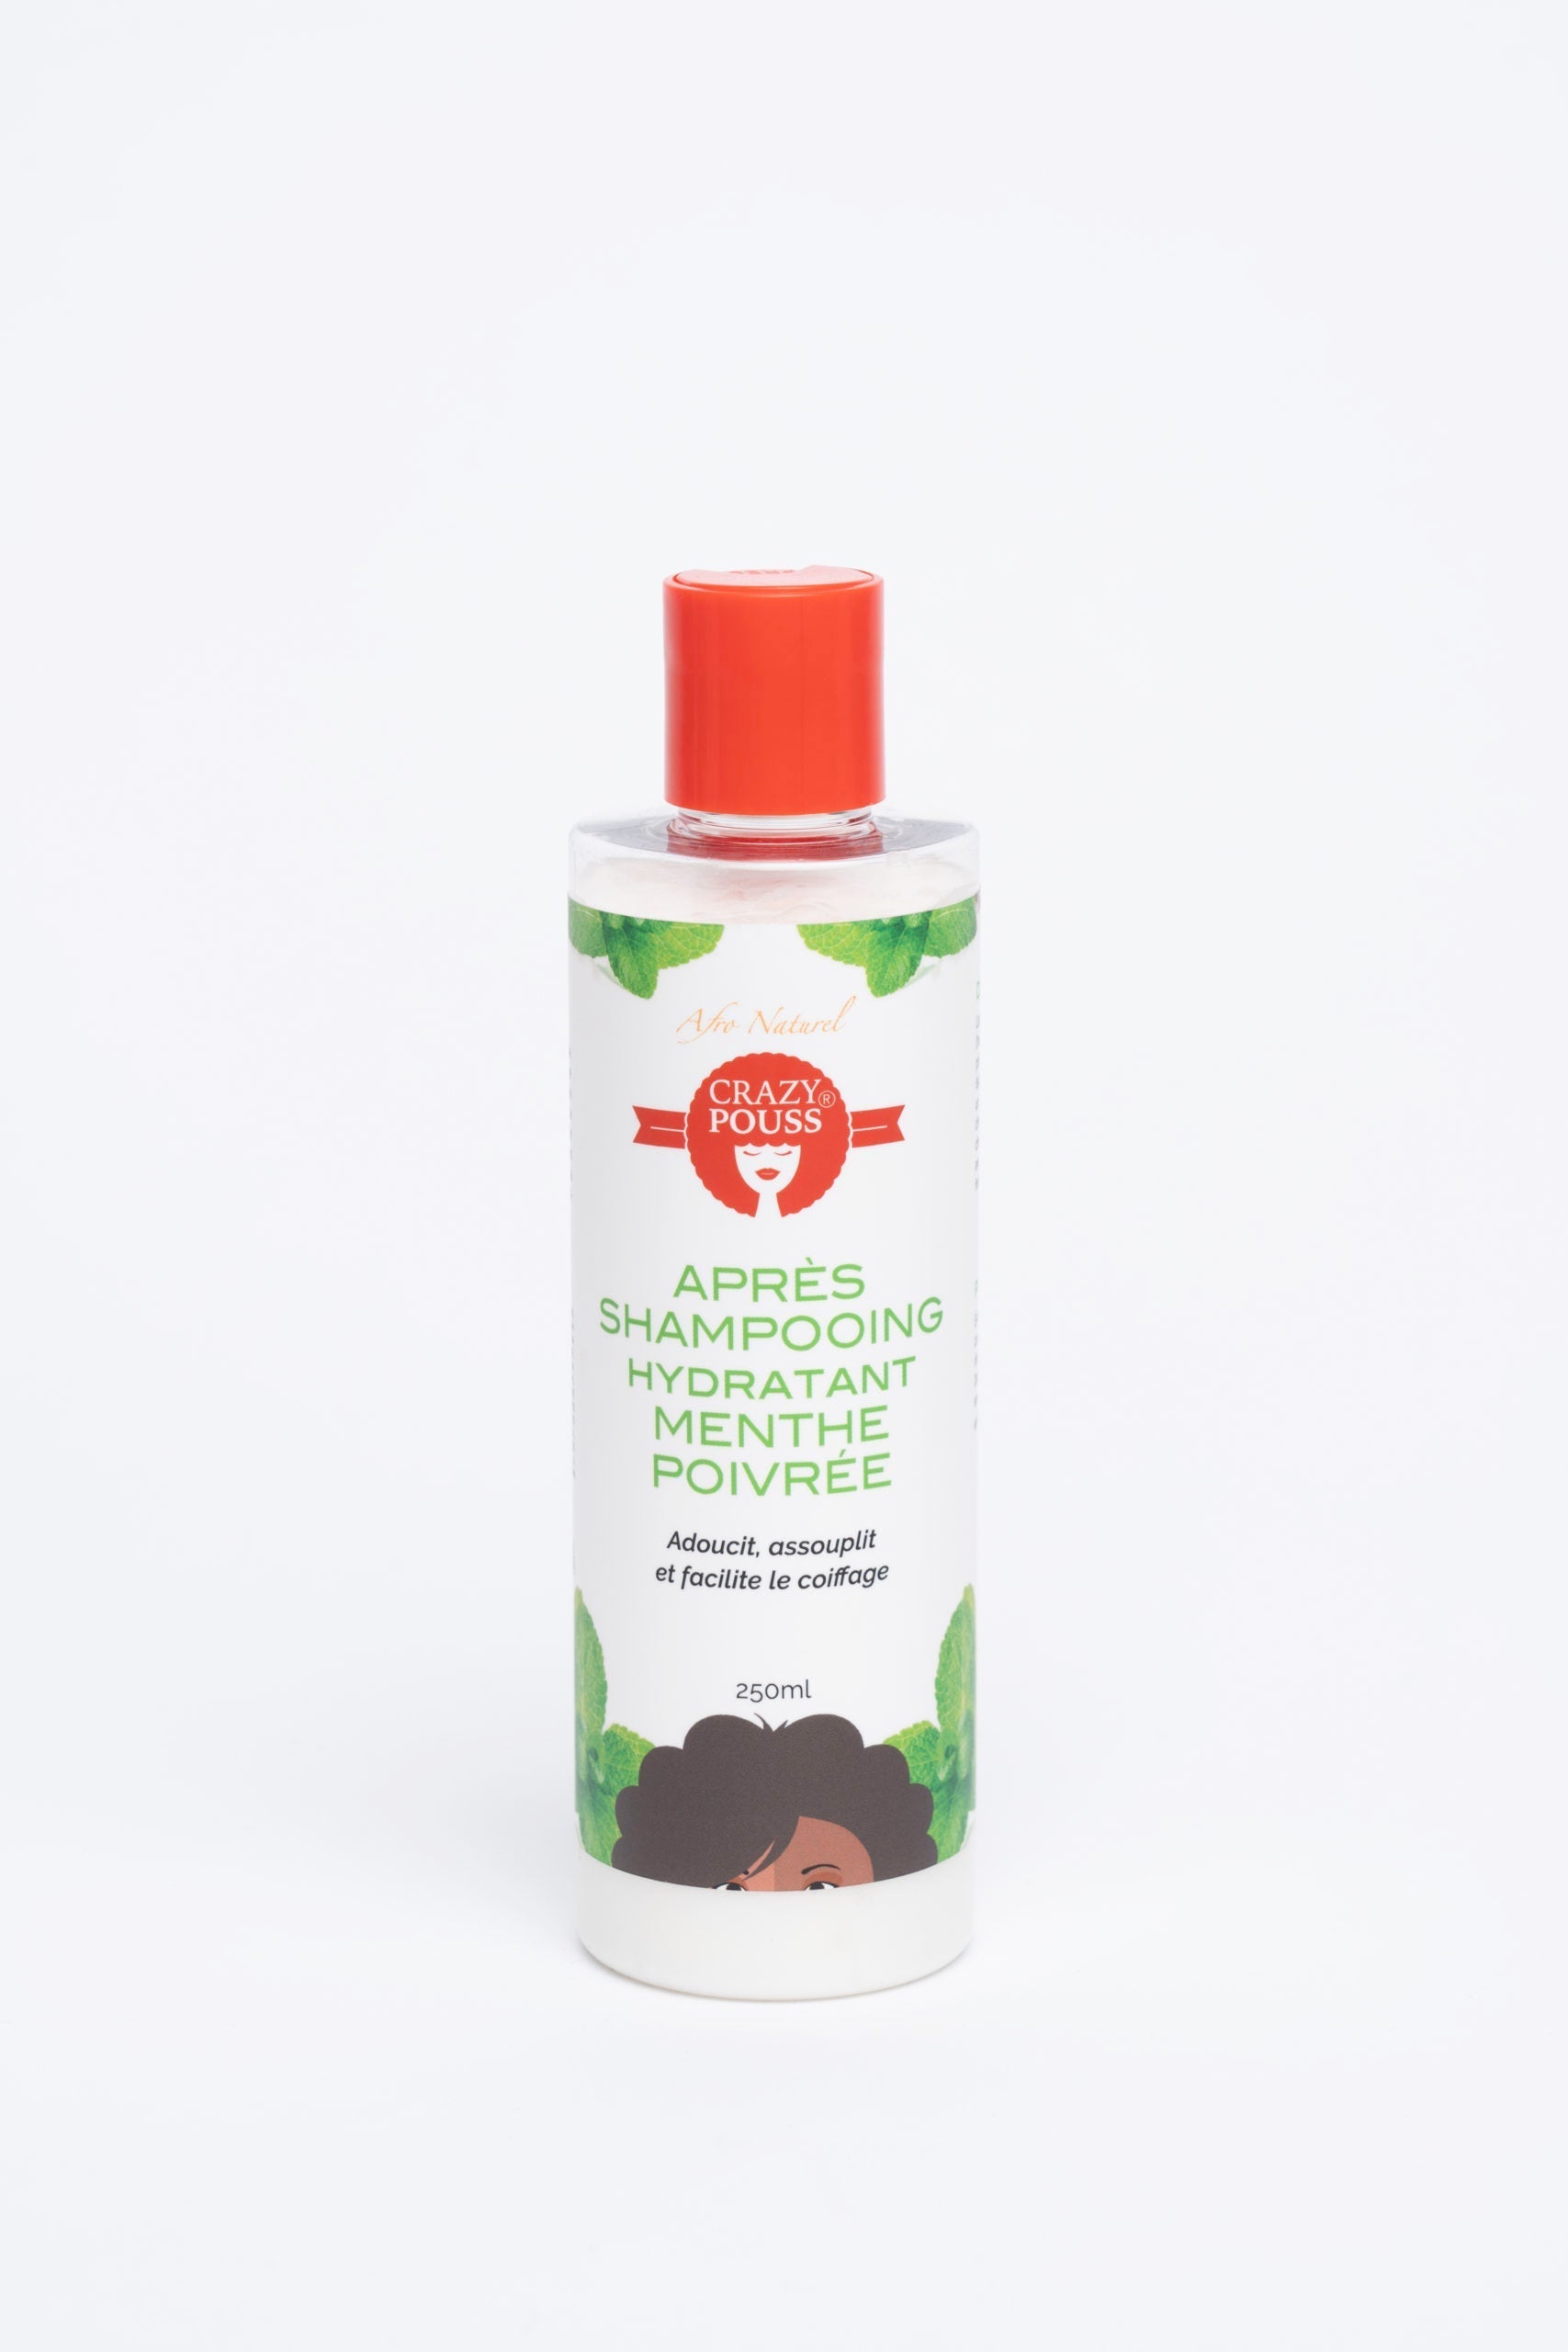 CRAZY POUSS - Après-shampooing hydratant à la menthe poivrée - Soin capillaire pour nettoyer et hydrater en profondeur vos cheveux crépus ou ondulés